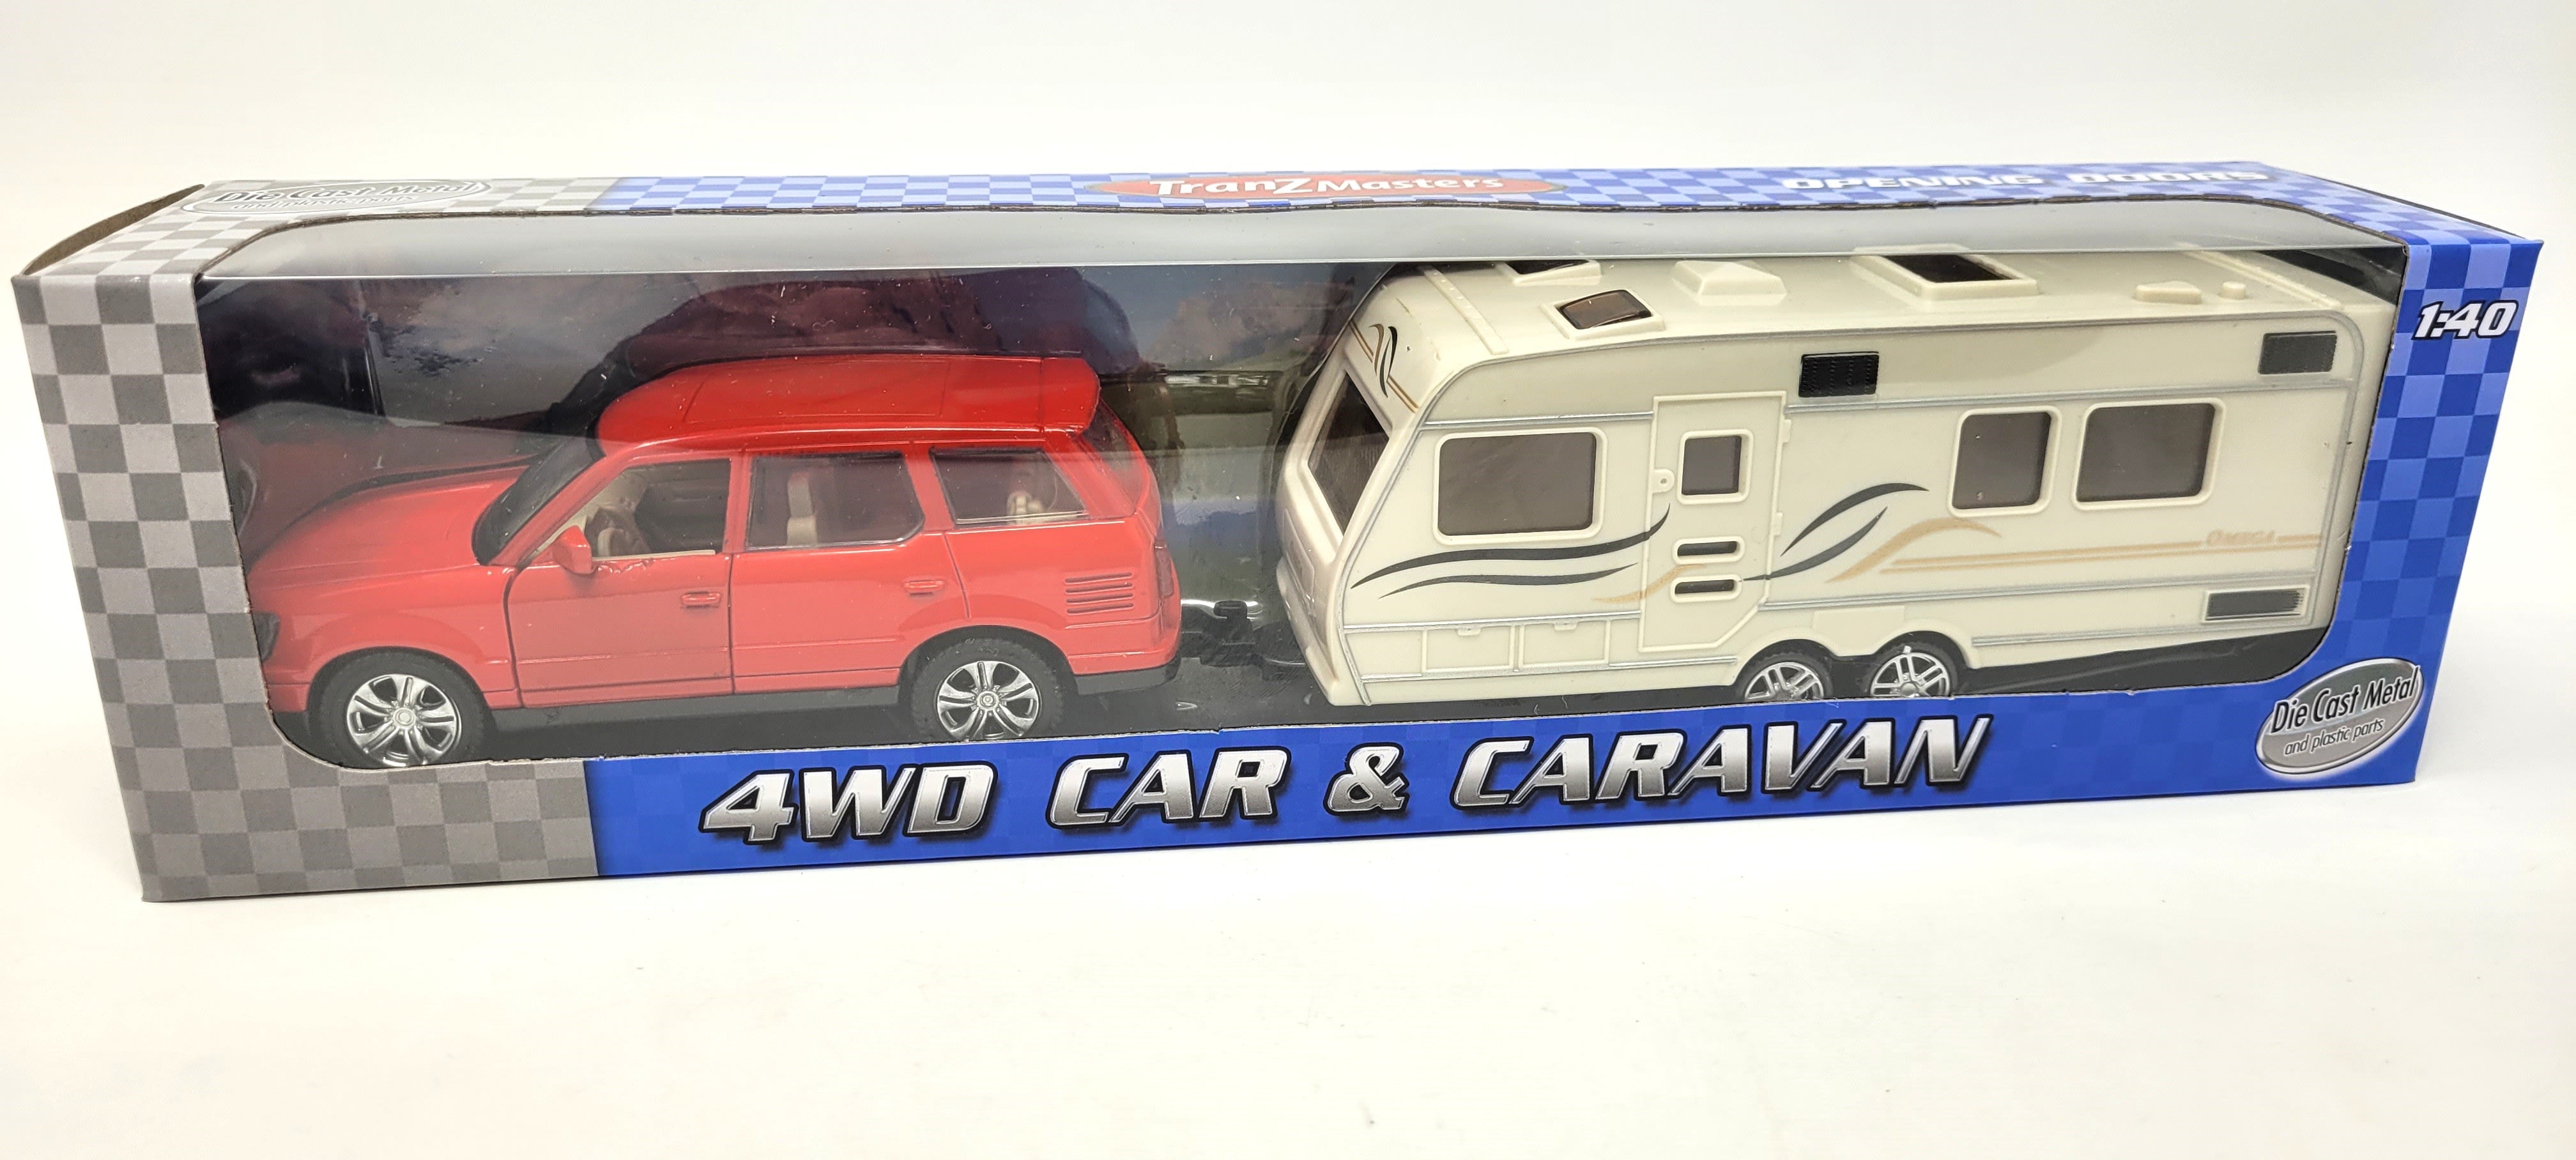 Tranzmasters 4WD Car & Caravan Toy